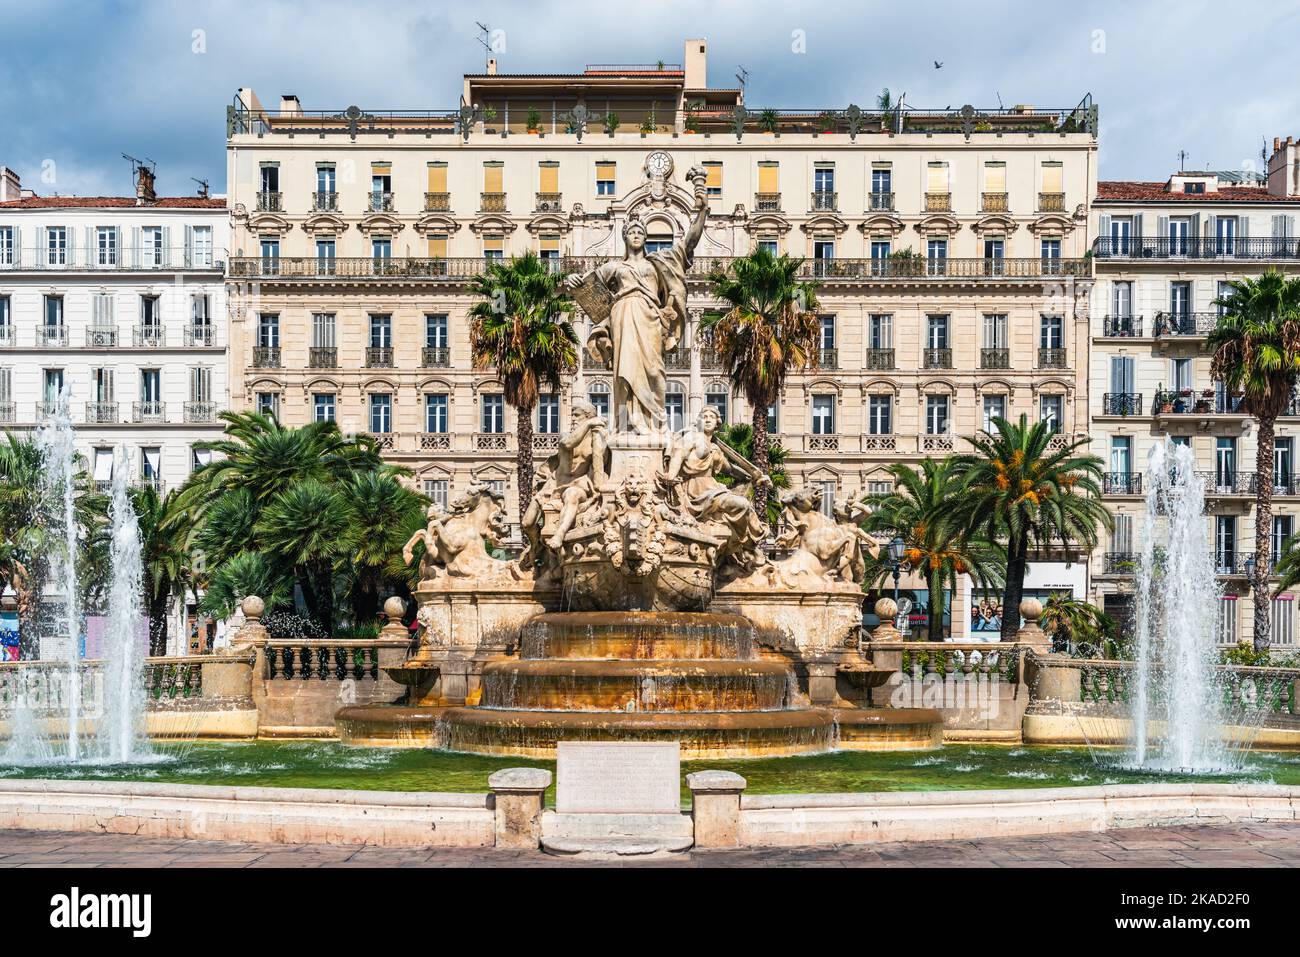 Fontaine de la Federation, Place de la Liberte, Toulon, France, Europe Stock Photo